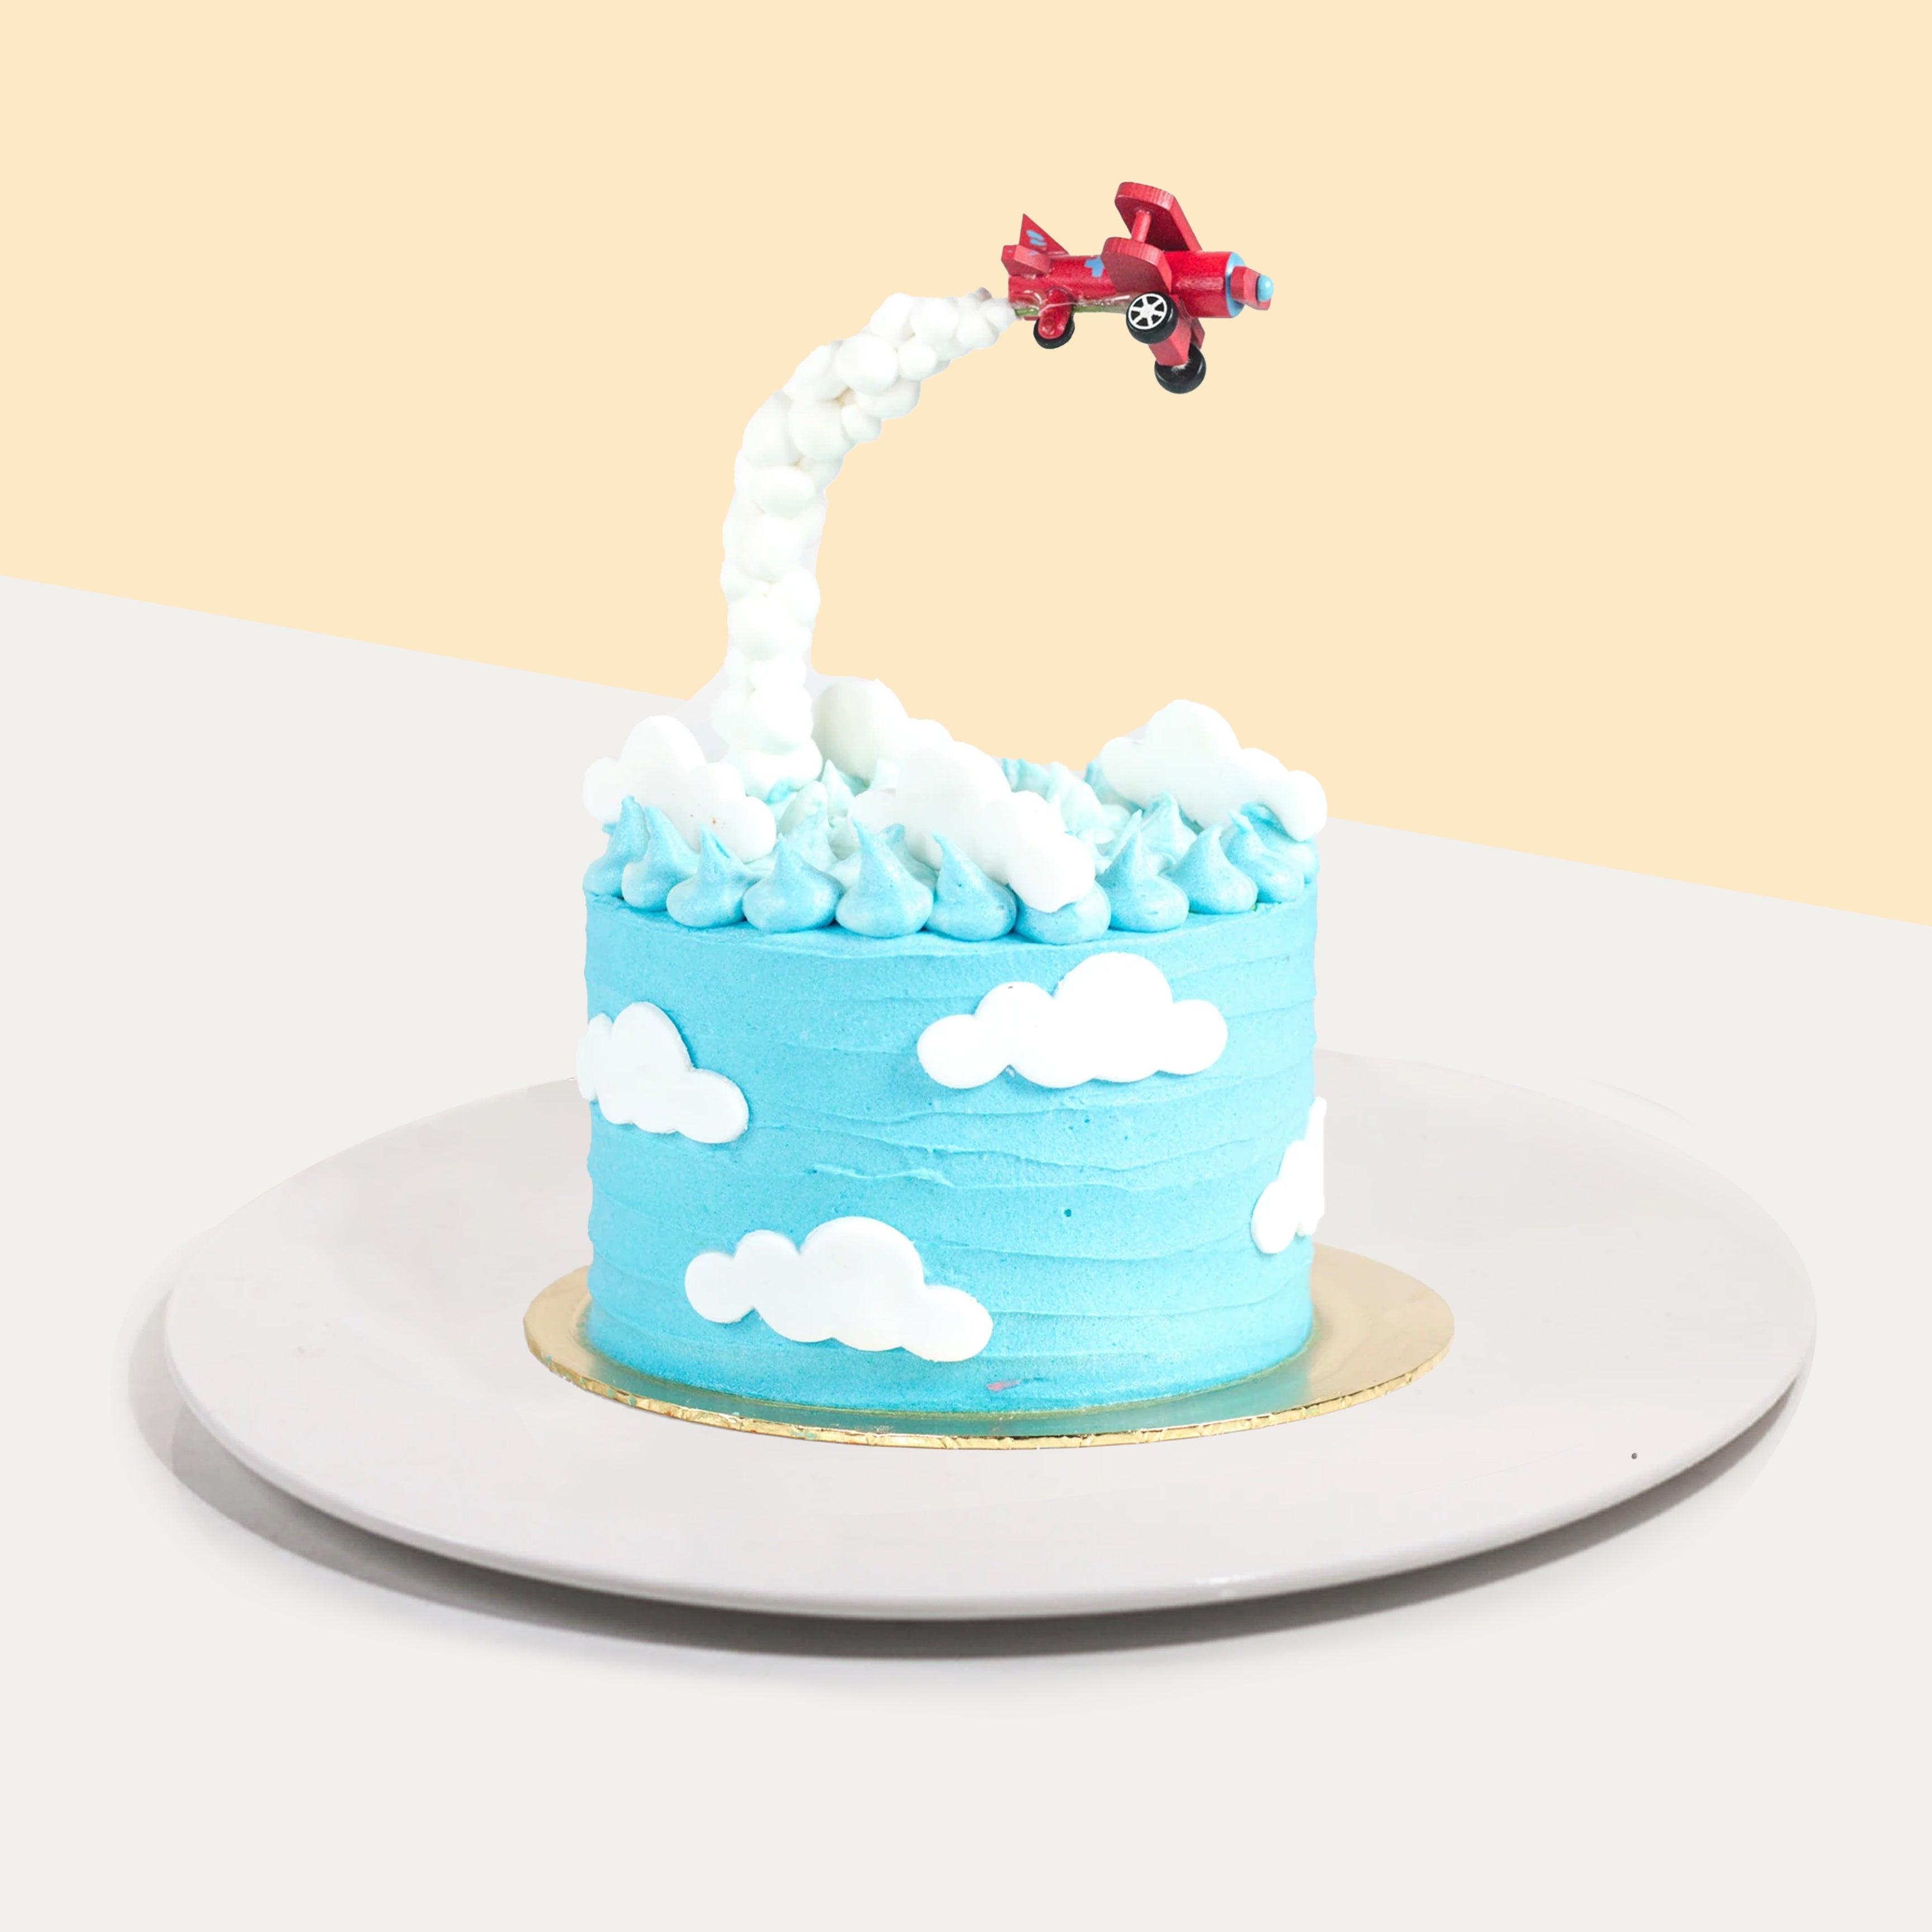 Airplane cake - Decorated Cake by Santis - CakesDecor